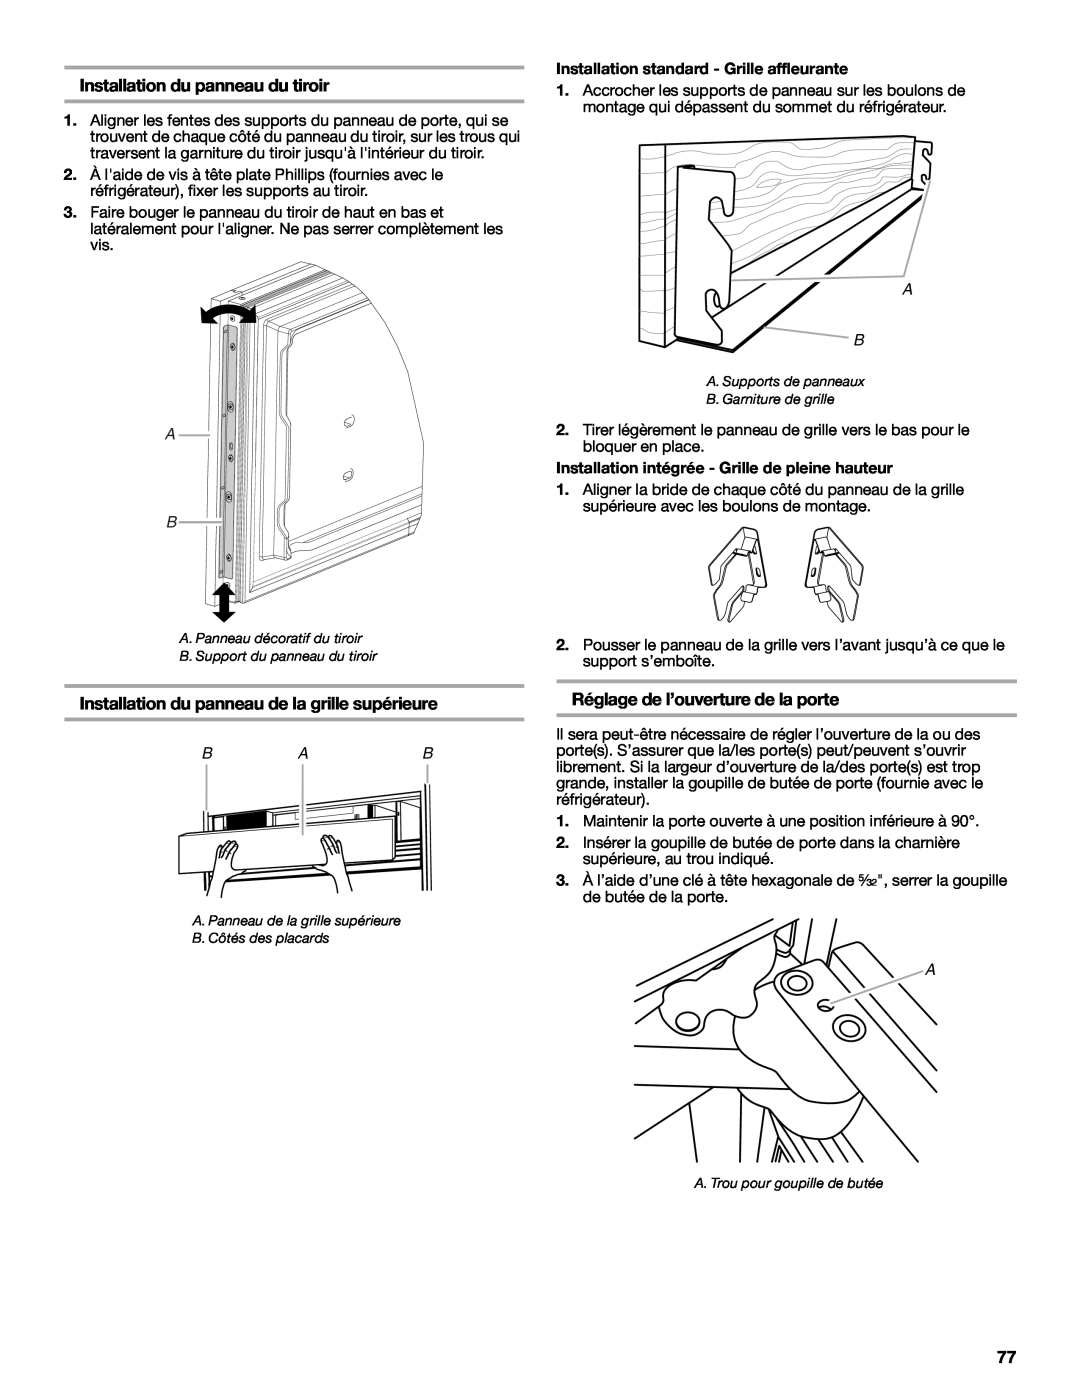 Jenn-Air W10379137A manual Installation du panneau du tiroir, Installation du panneau de la grille supérieure 